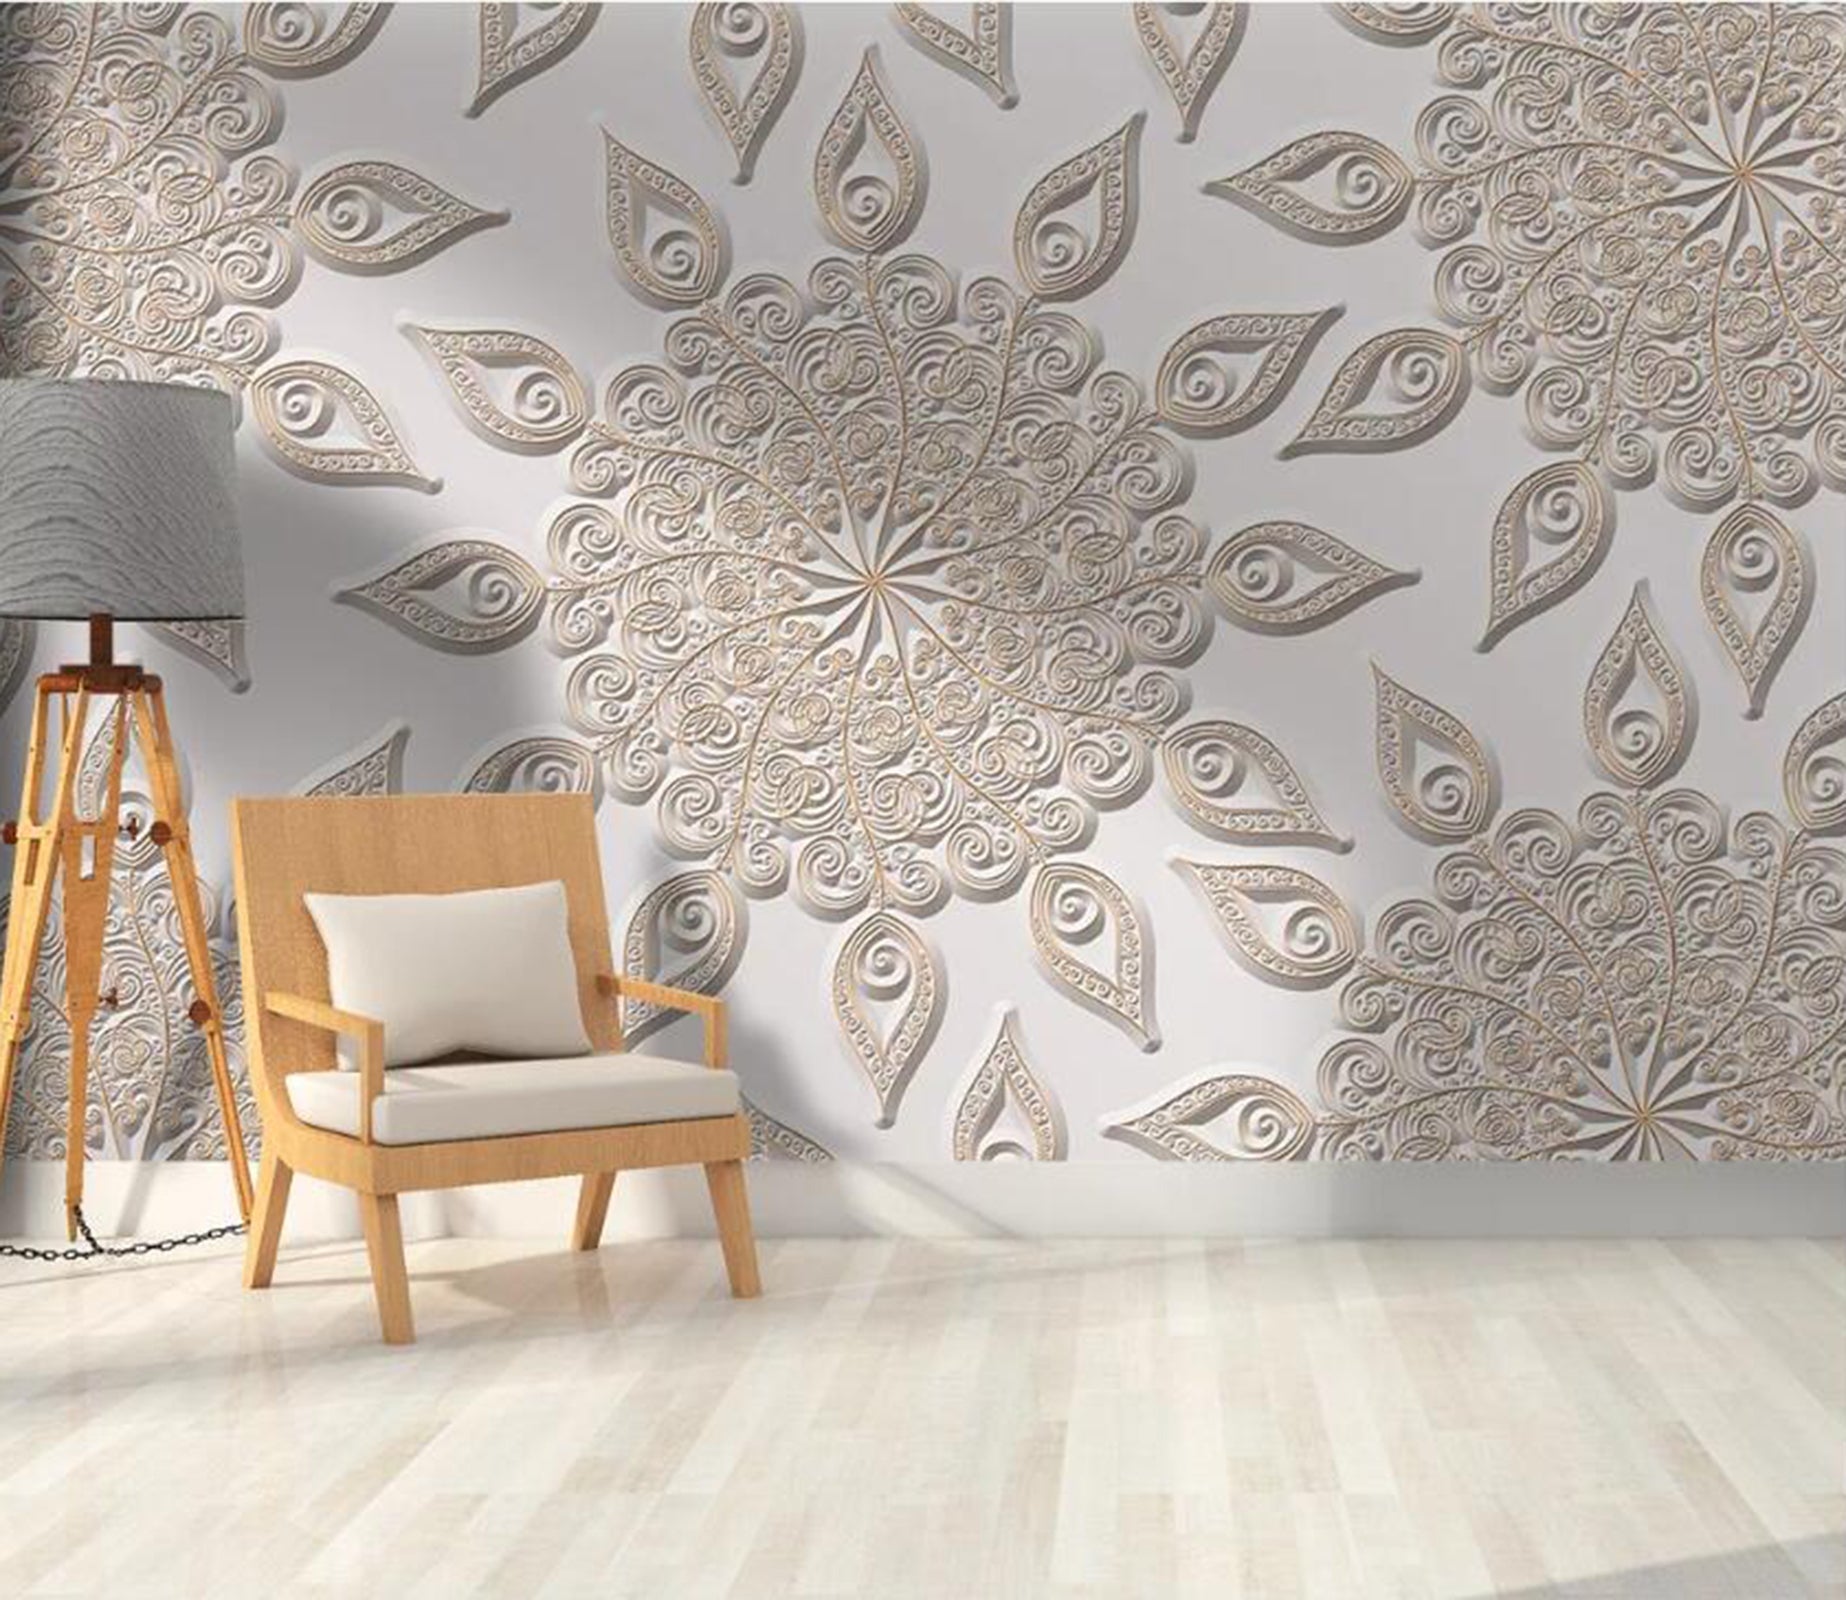 3D Carved Petals WC94 Wall Murals Wallpaper AJ Wallpaper 2 